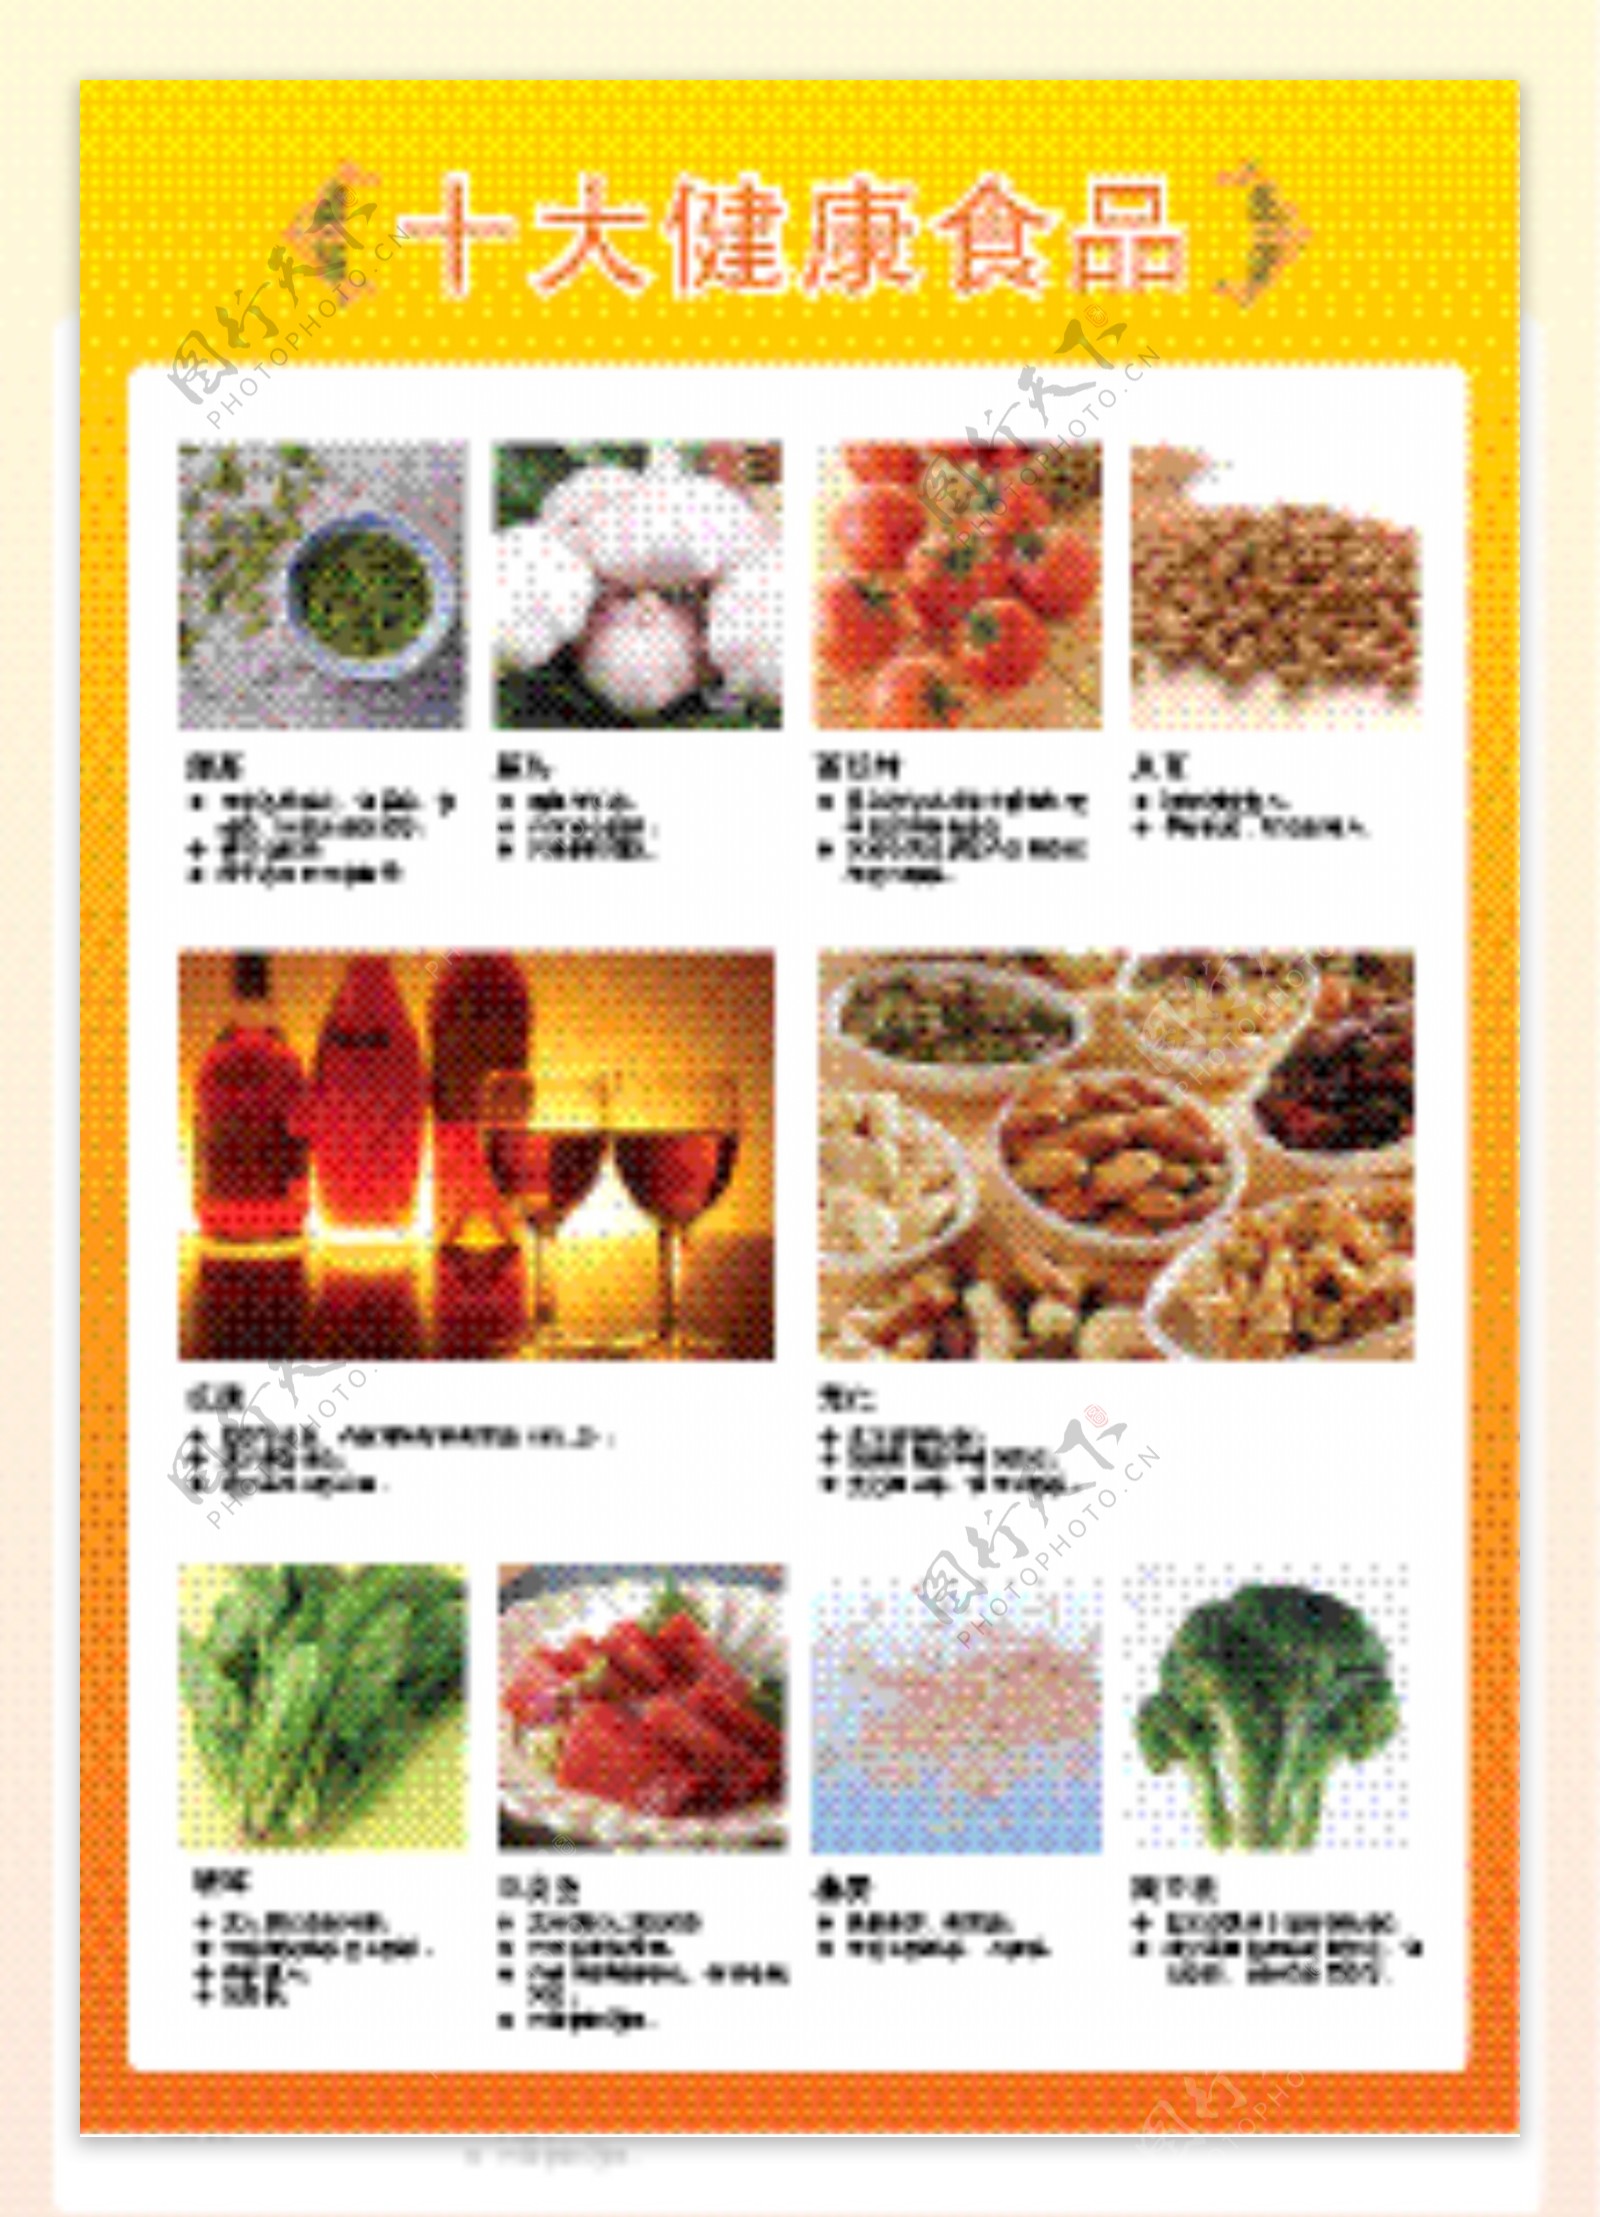 十大健康食品图片